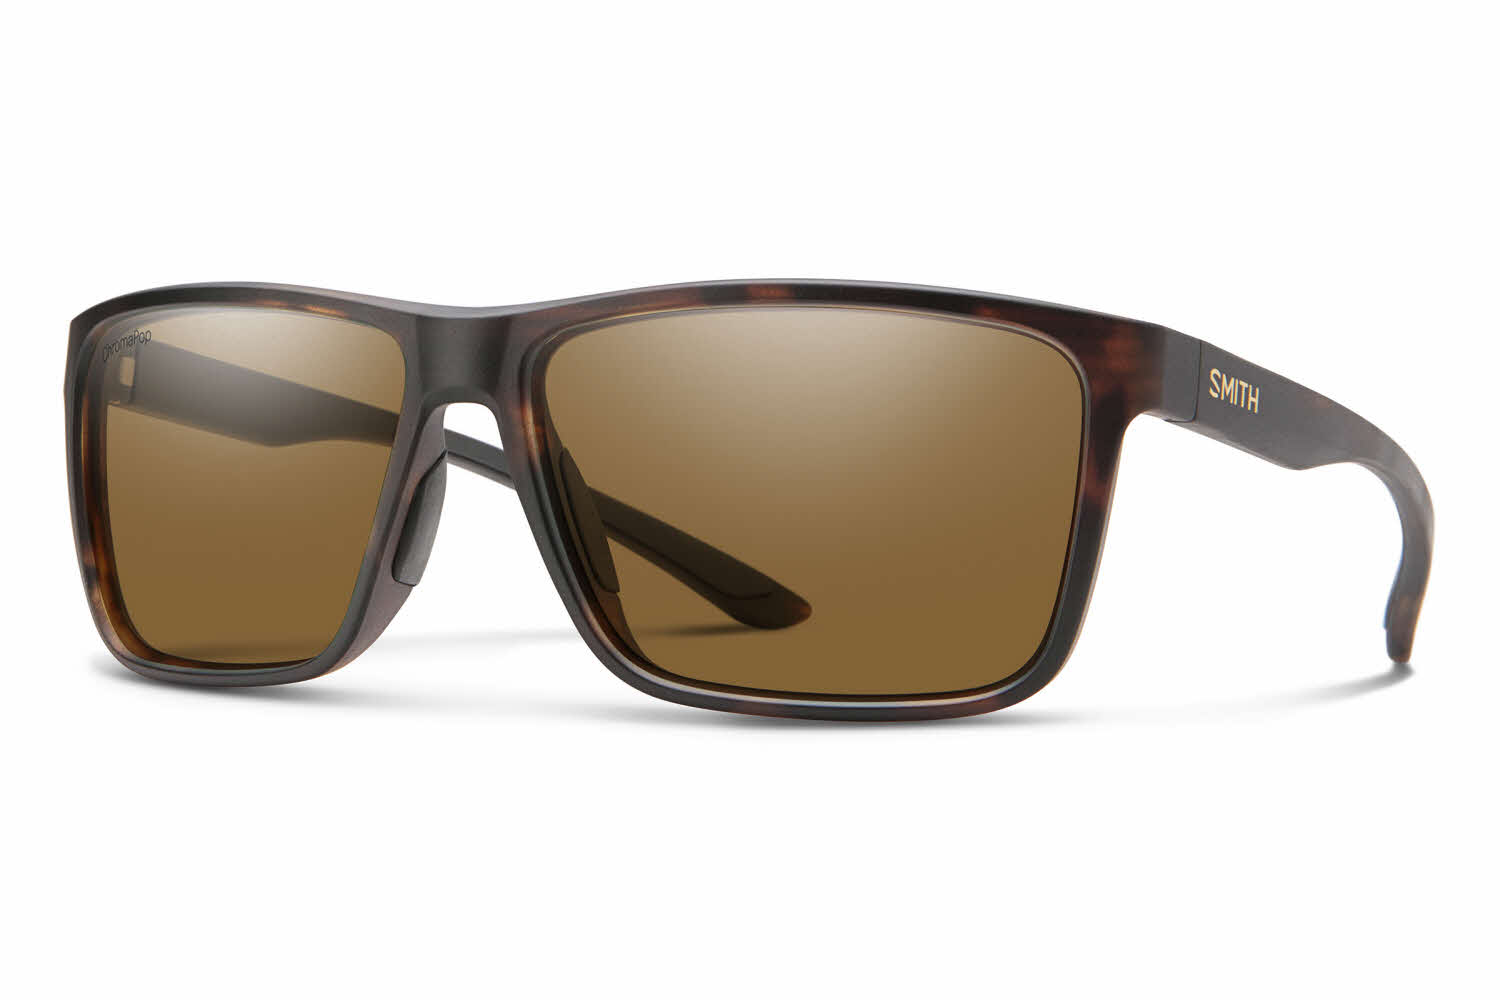 Smith Riptide Sunglasses | FramesDirect.com